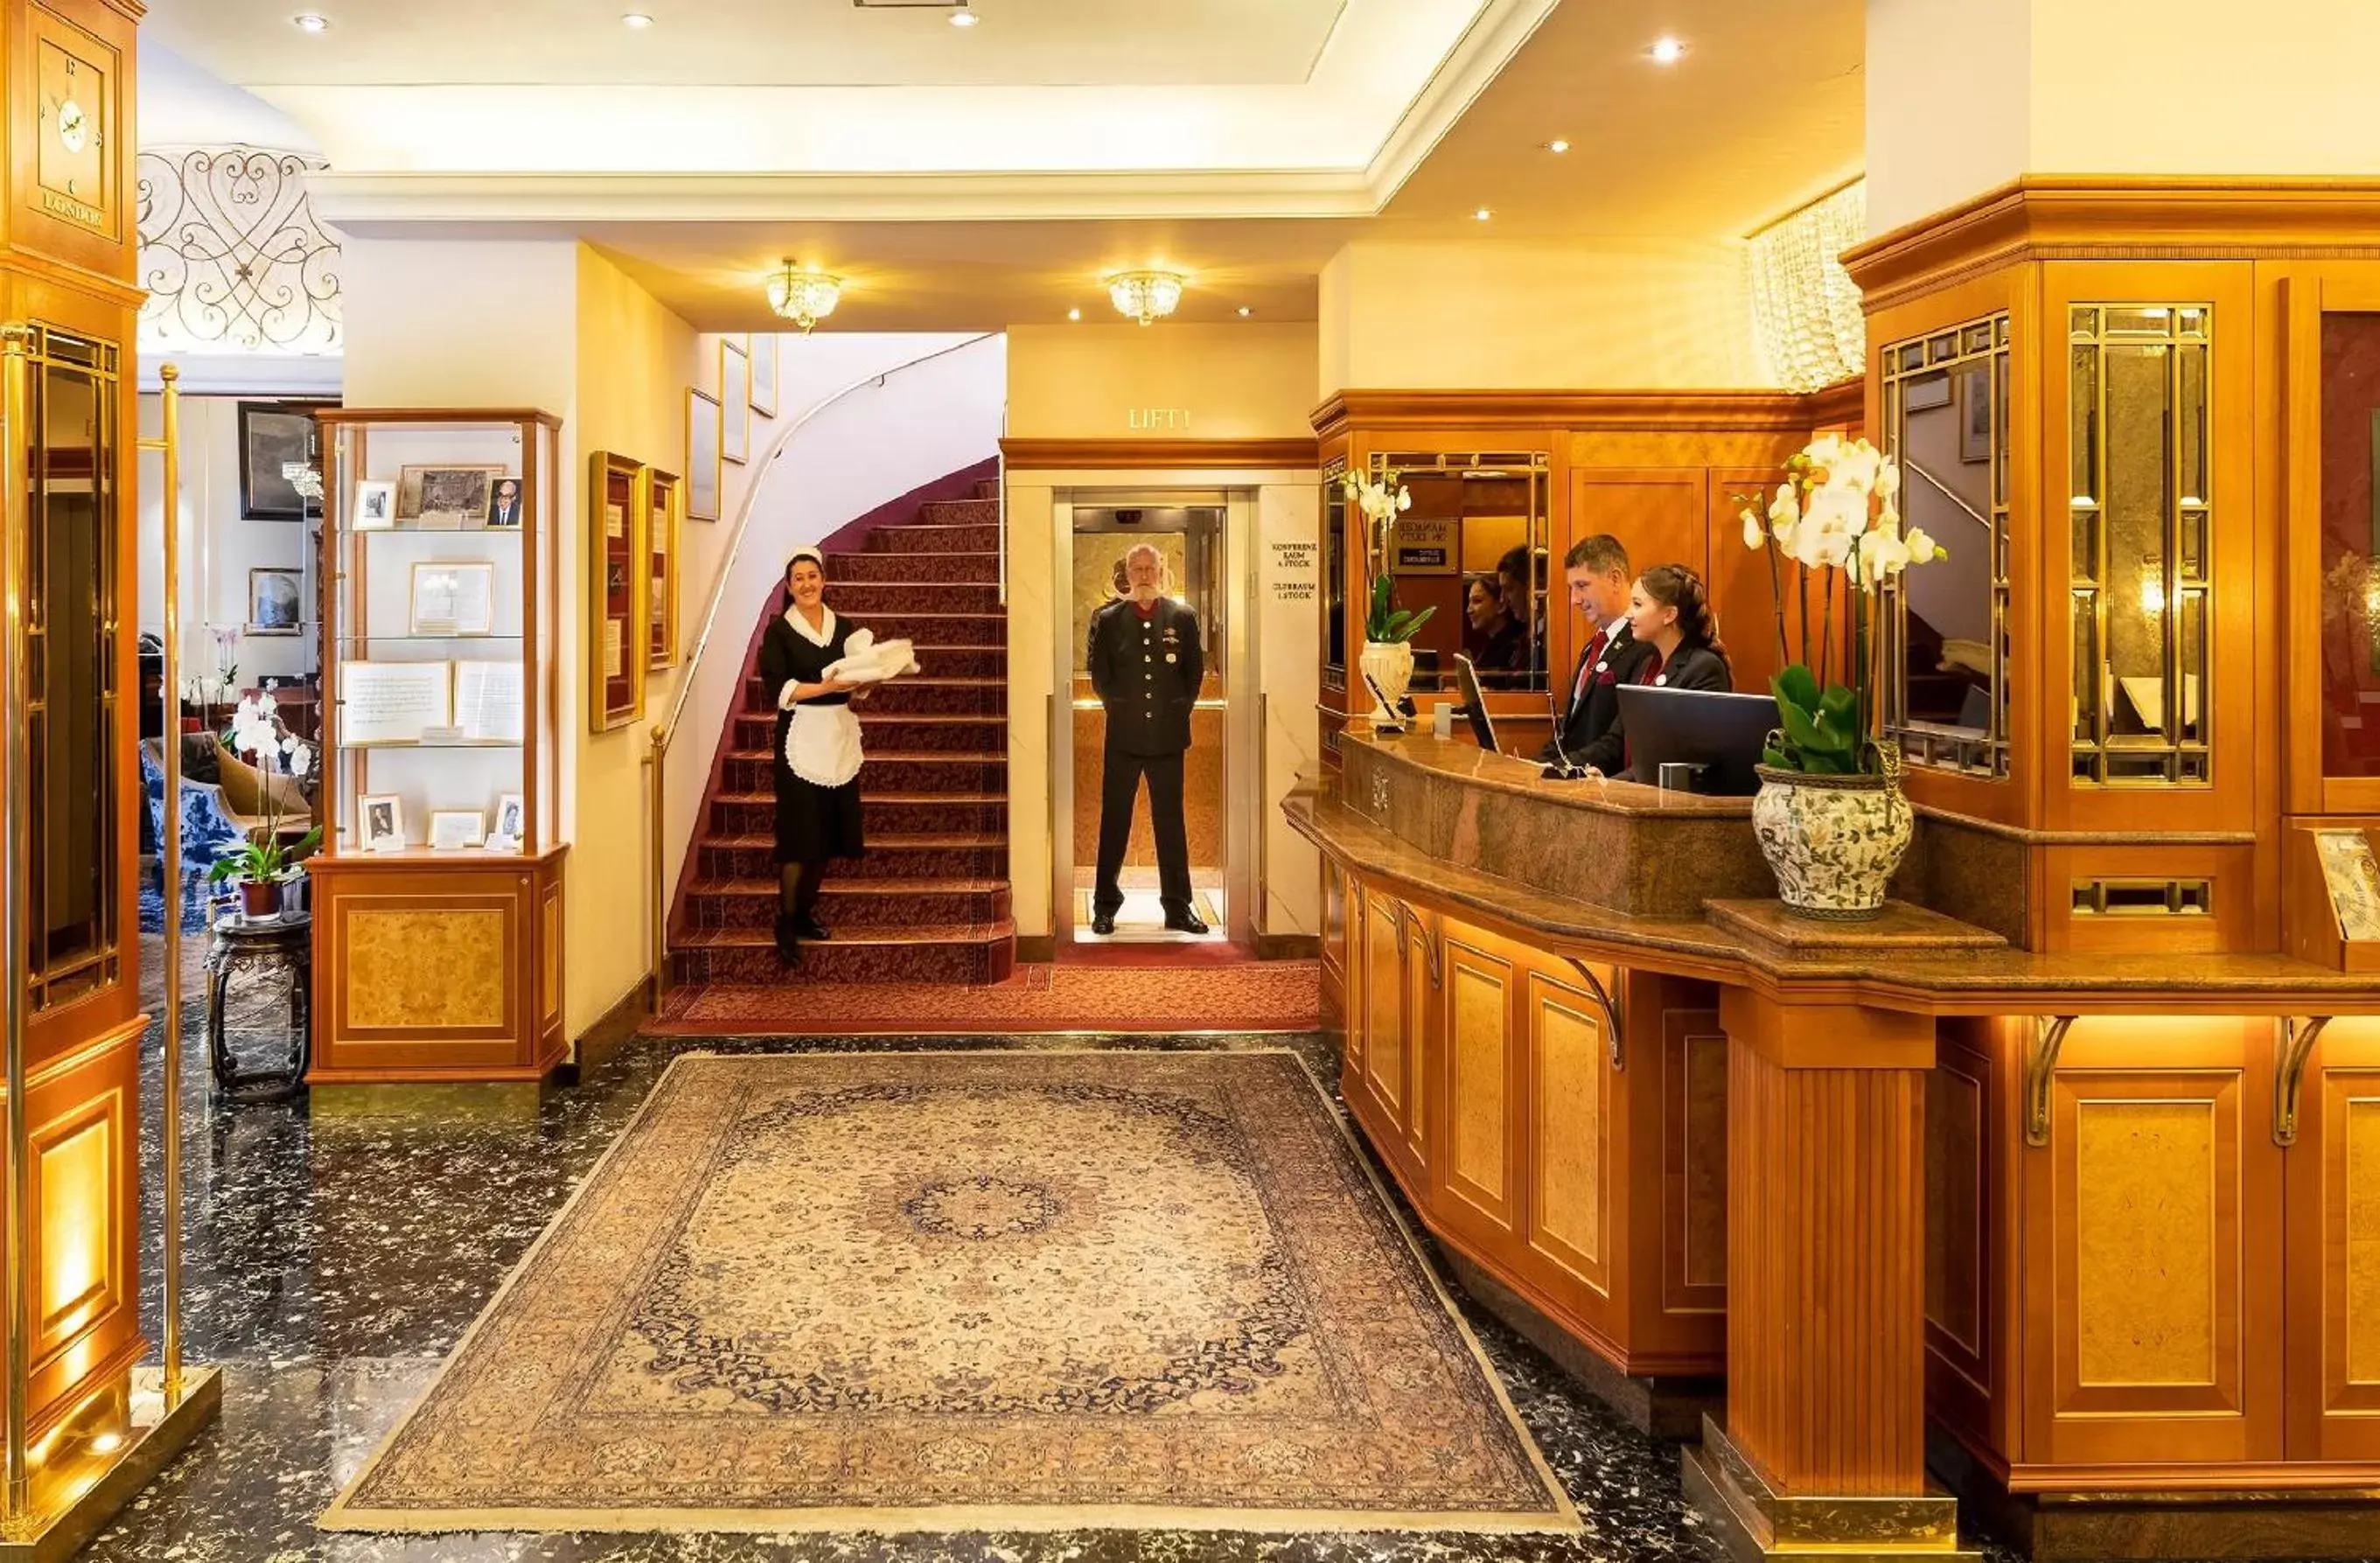 Lobby or reception, Lobby/Reception in Hotel Stefanie